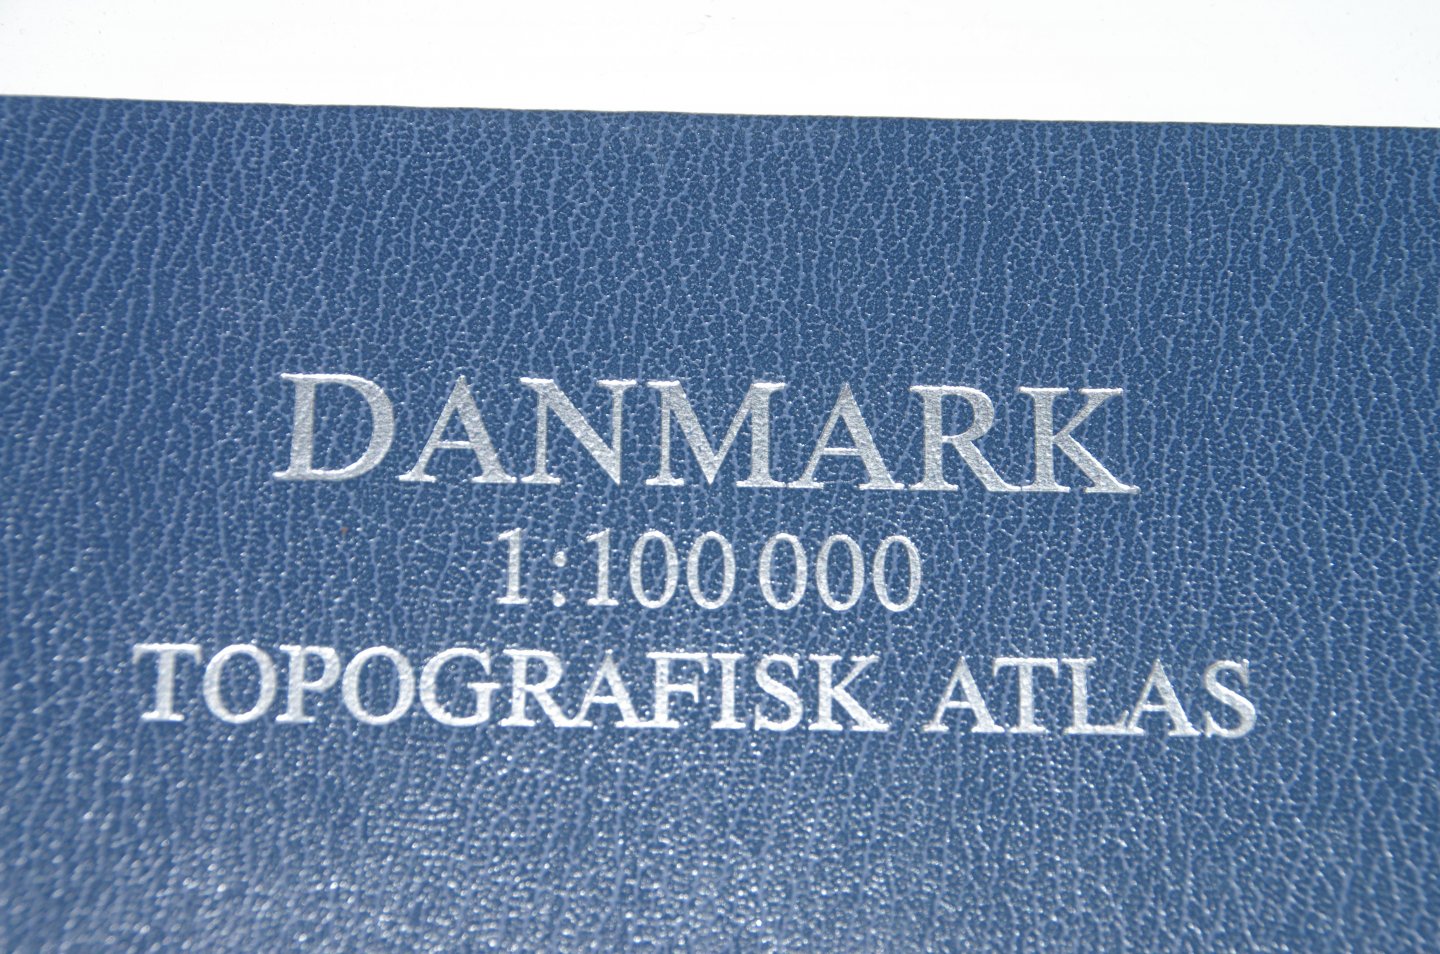  - Danmark Topografisk Atlas 1:100.000